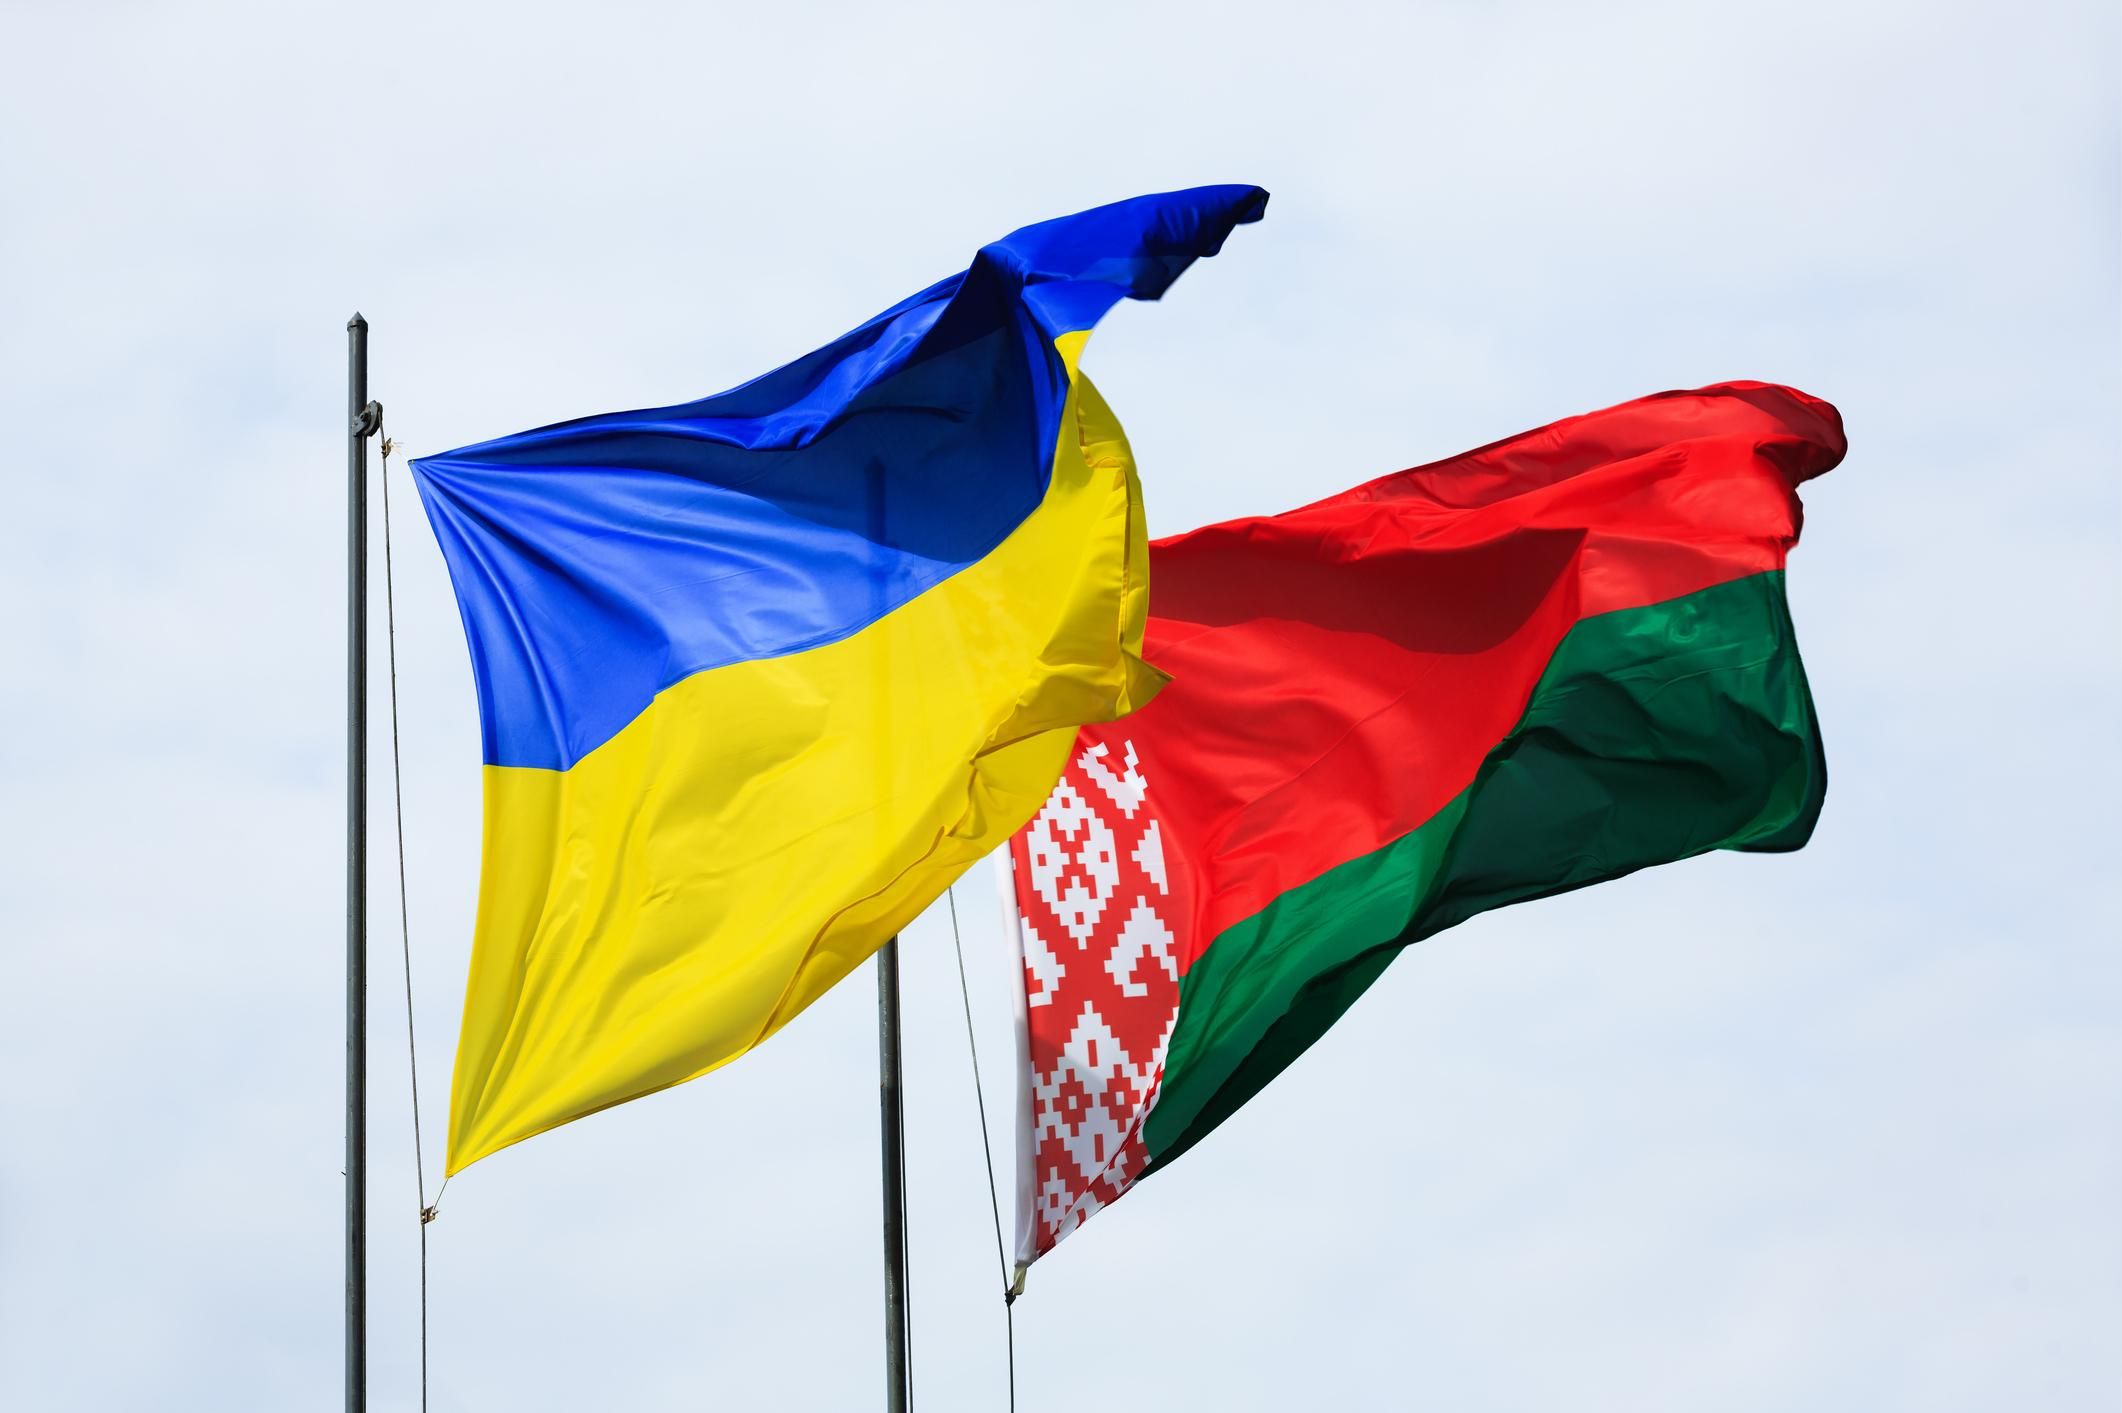 Беларусь действительно потеряет больше, – эксперт о возможности прекращения торговли с Украиной - новости Беларусь - Экономика